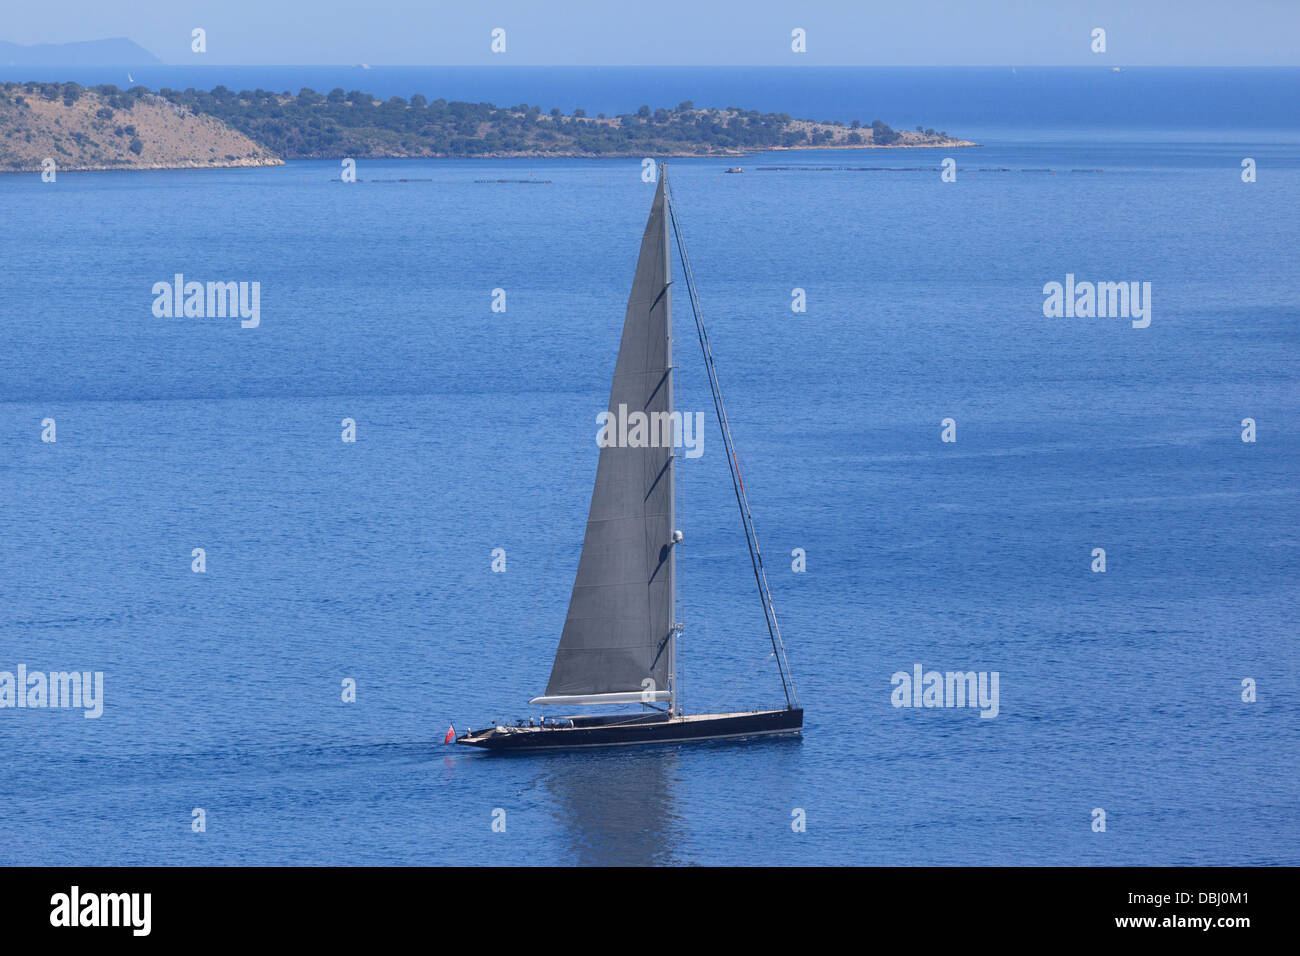 The super yacht Aglaia sailing off Kerasia in Corfu Stock Photo